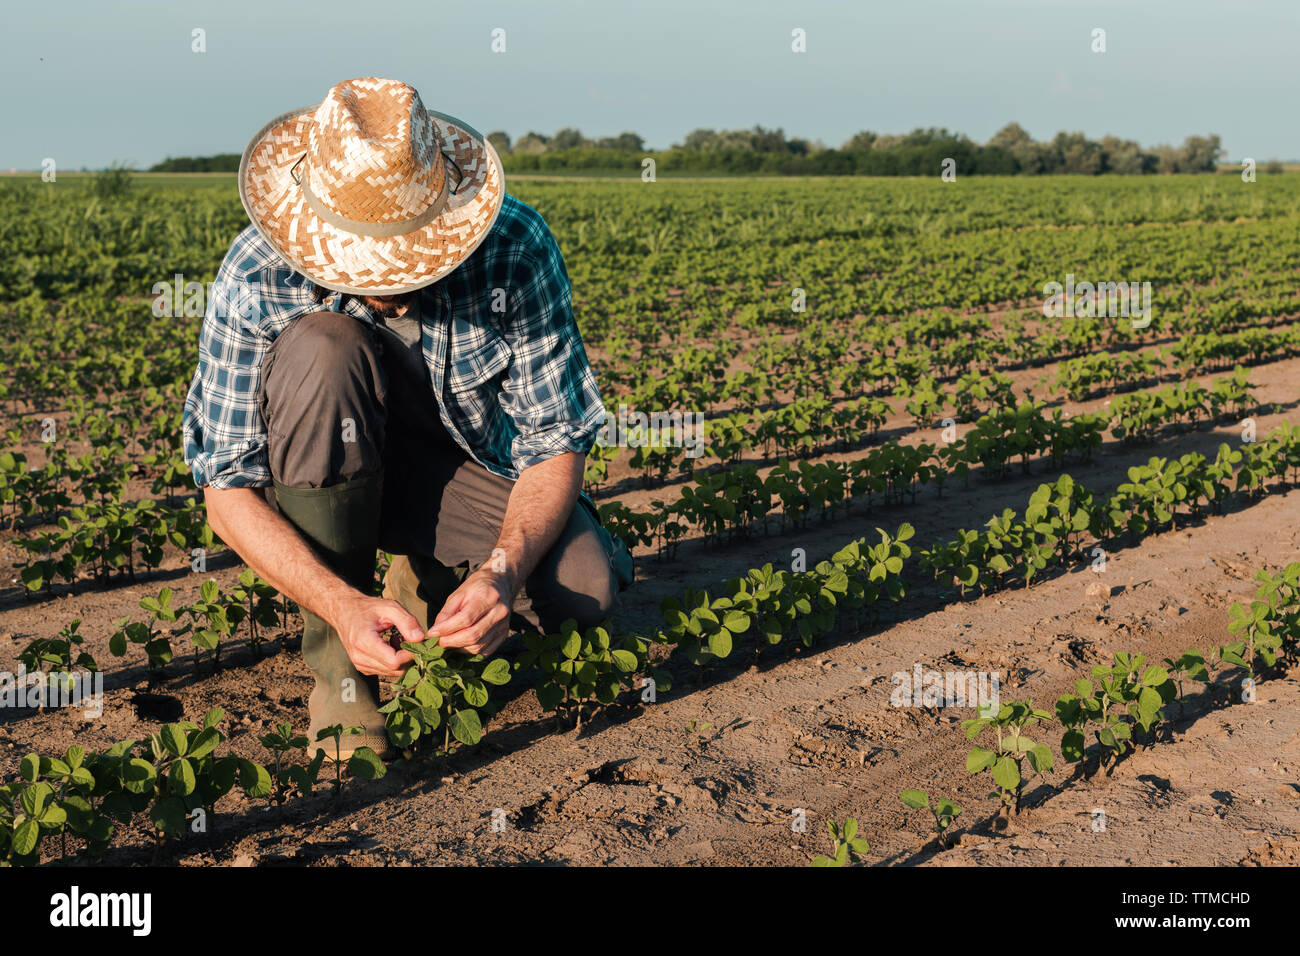 Bauern arbeiten auf sojabohne Plantage, Prüfung der Kulturen Entwicklung in frühen Entwicklungsstadien, die ökologische Landwirtschaft von Soja Pflanzen. Stockfoto